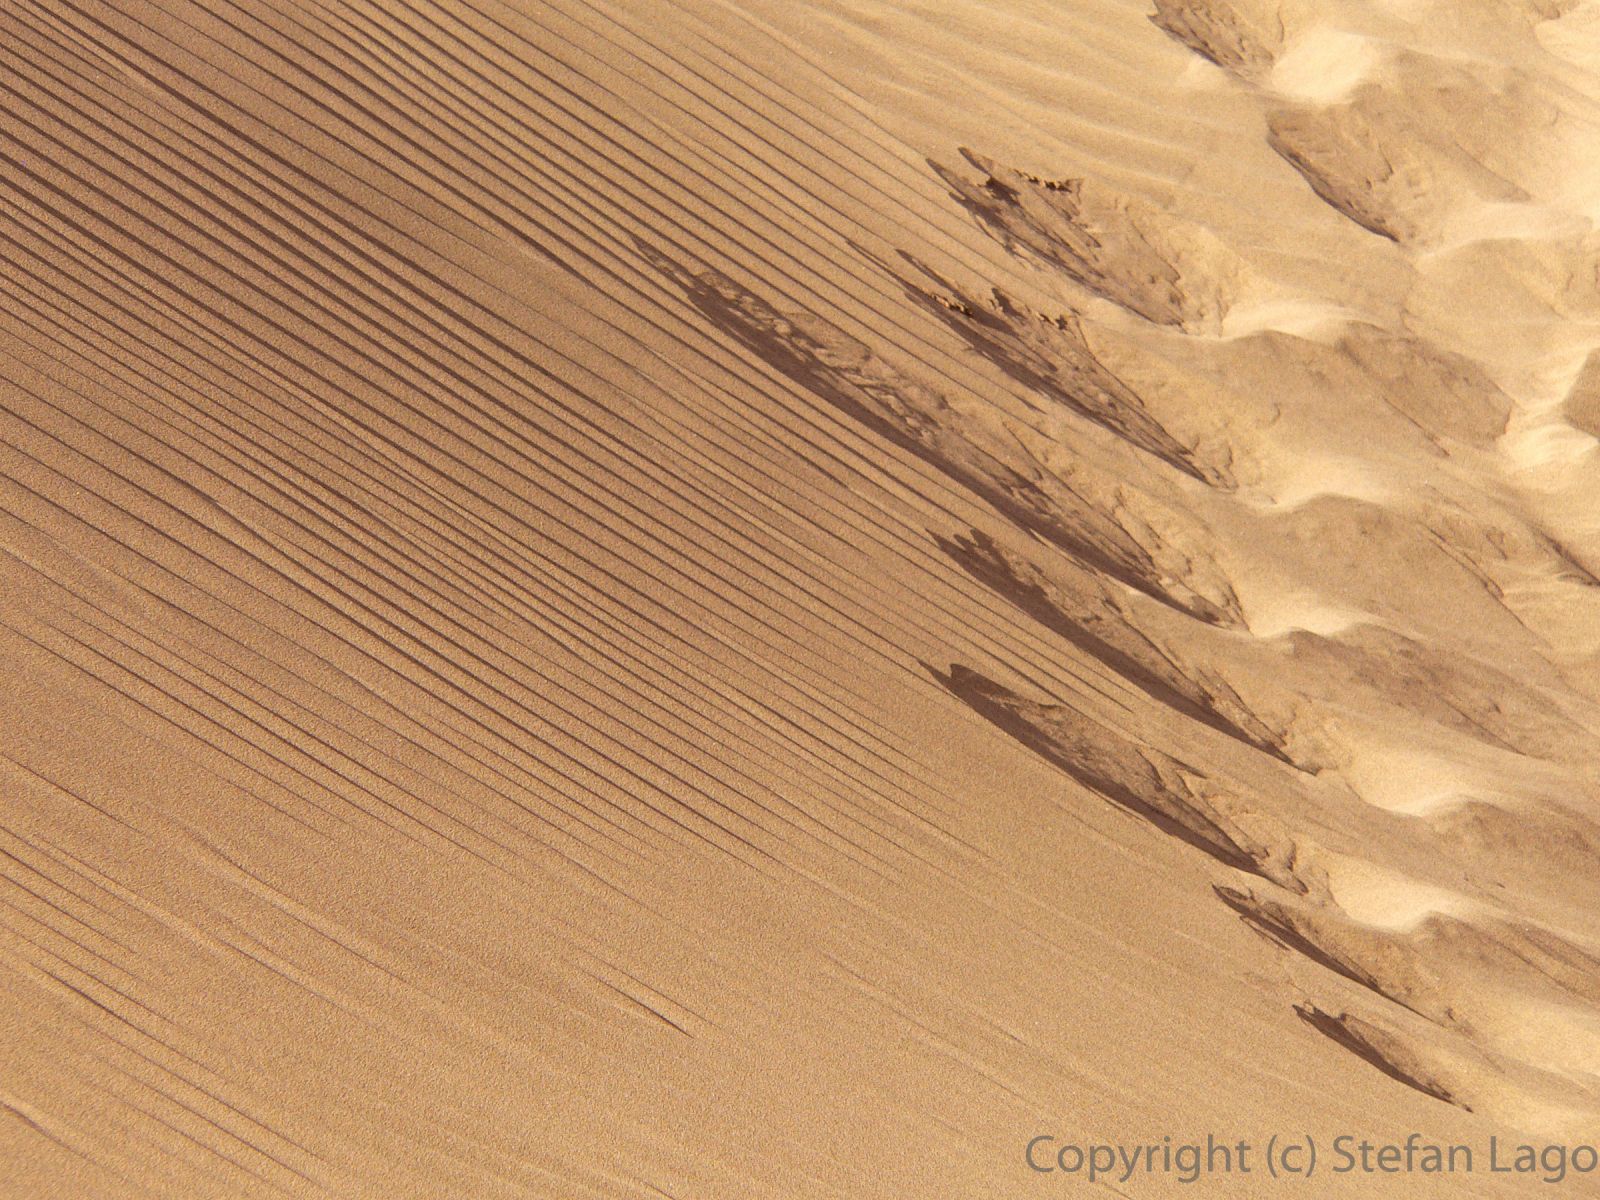 Detailaufnahme von windgeformten Mustern in den Sanddünen von Playa del Ingles/Maspalomas auf Gran Canaria.(2560 x 1920 px)